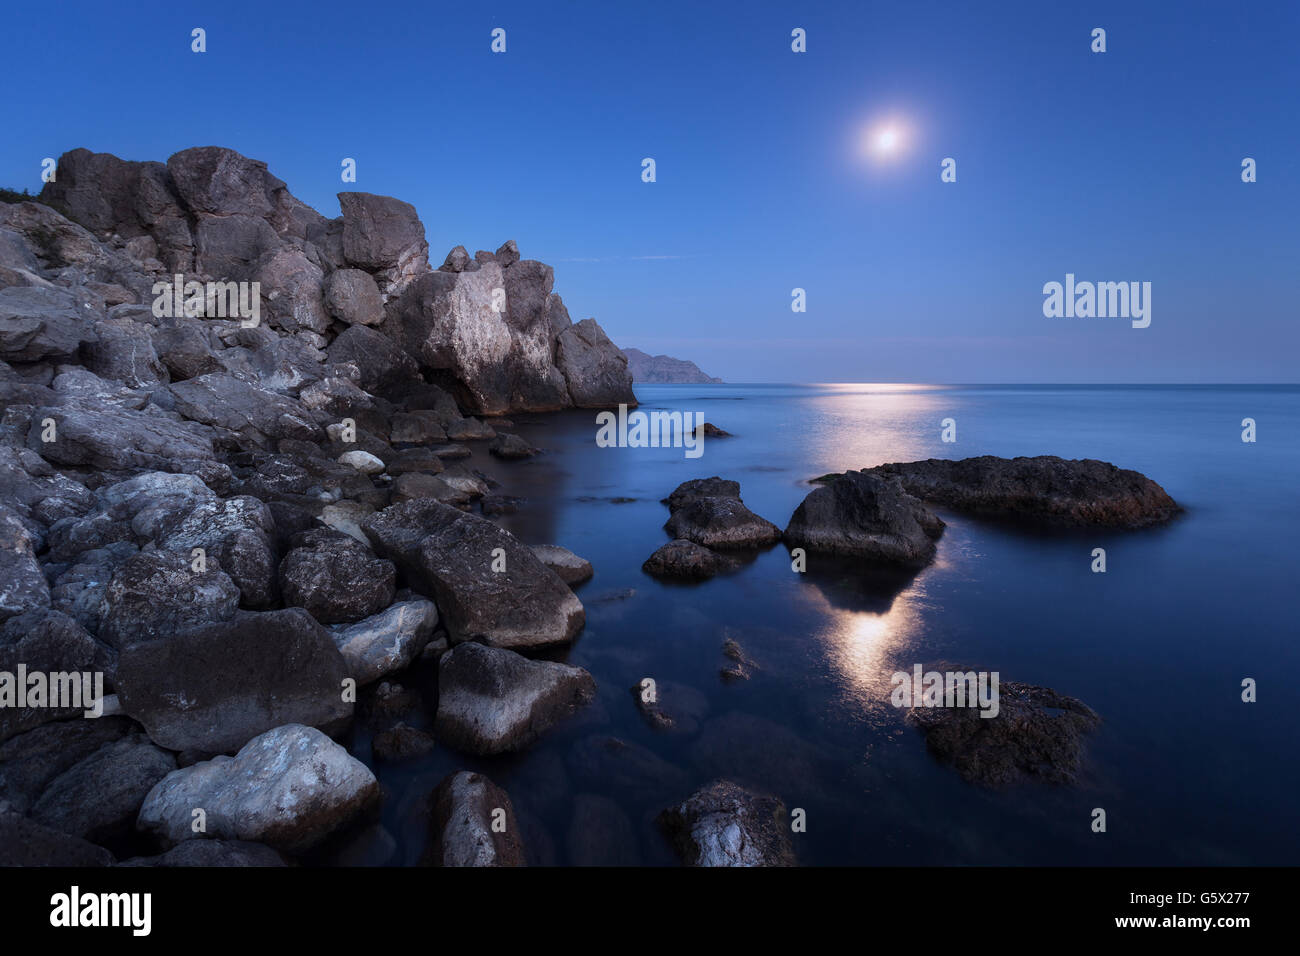 Paysage de nuit avec la pleine lune, chemin des roches lunaires et en été. Paysage de montagne à la mer Banque D'Images